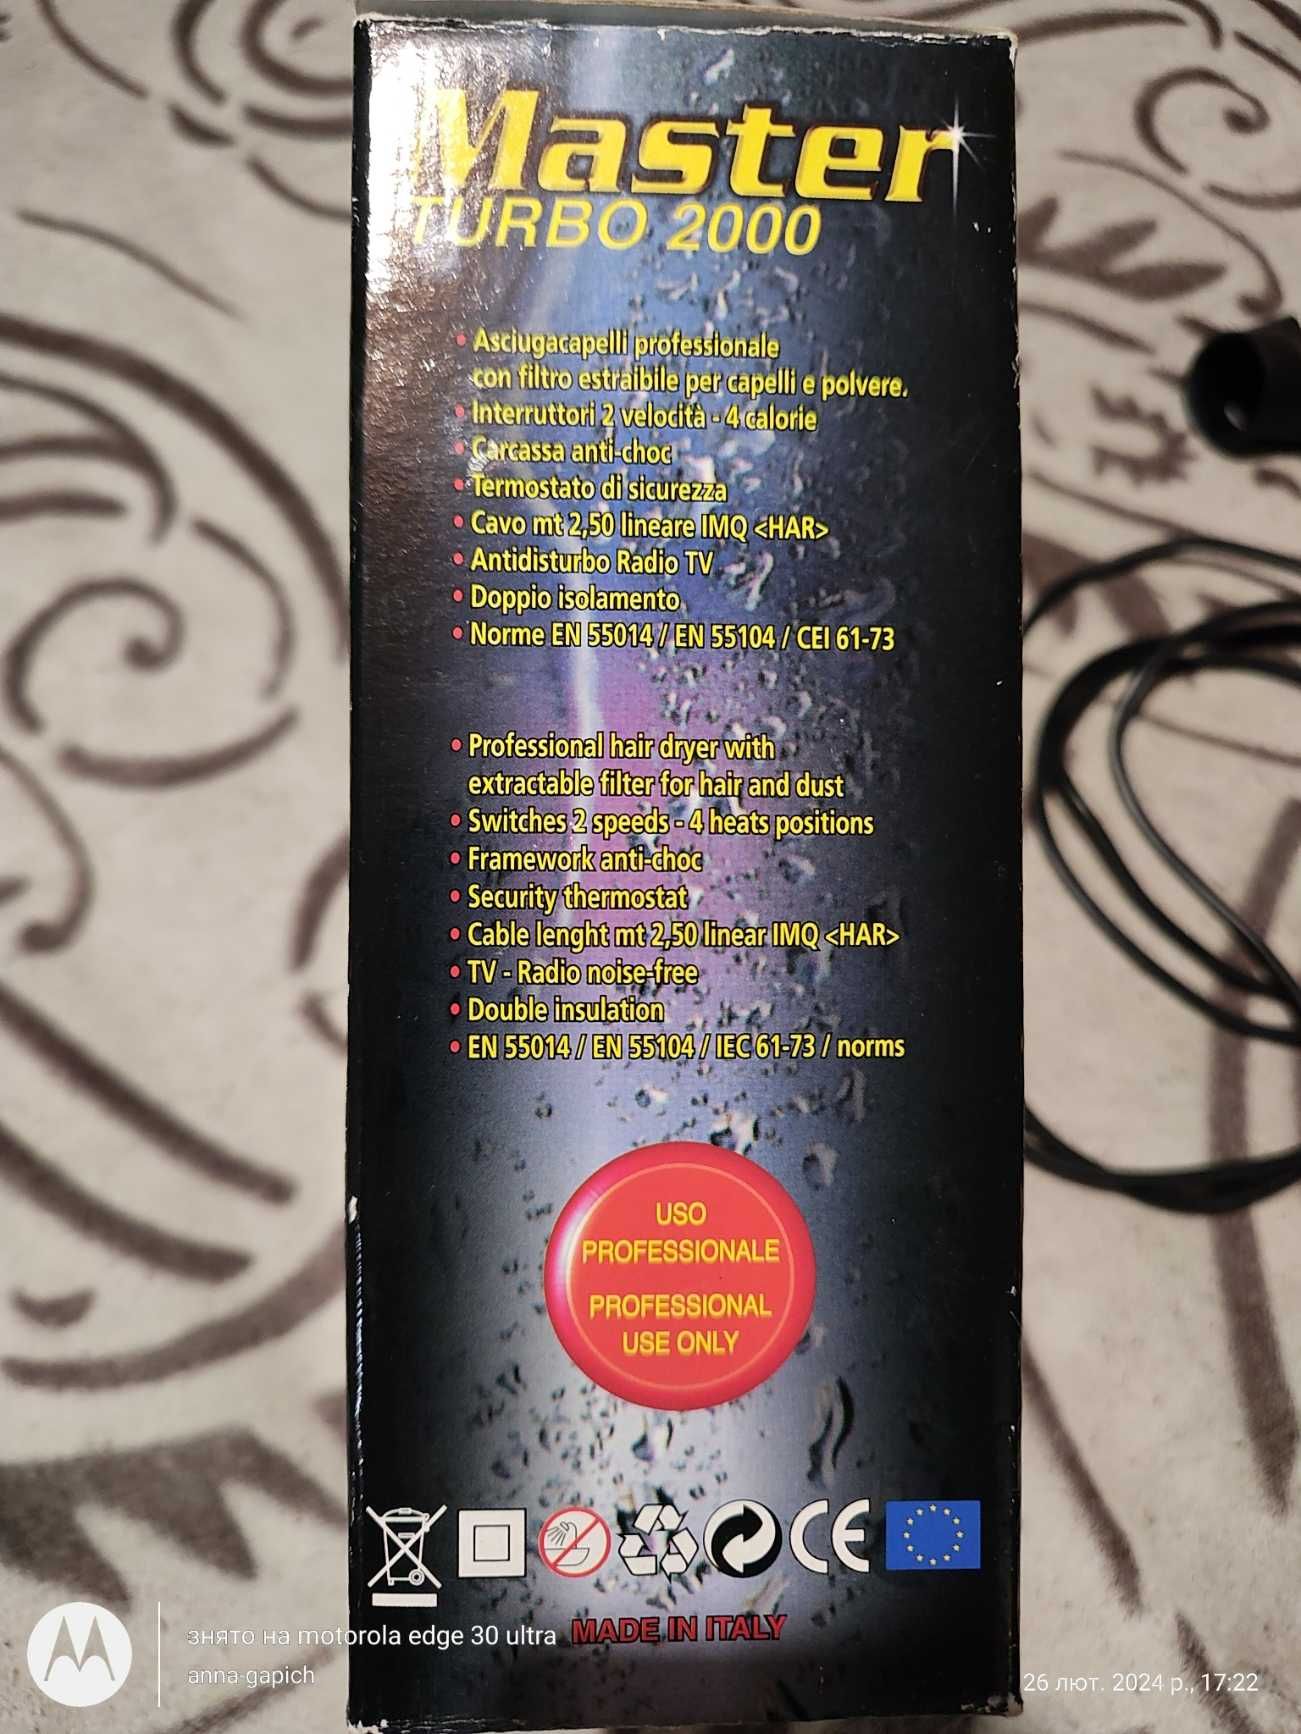 Фен профессиональный Master Turbo 2000 от Dana Italia + подарок !!!